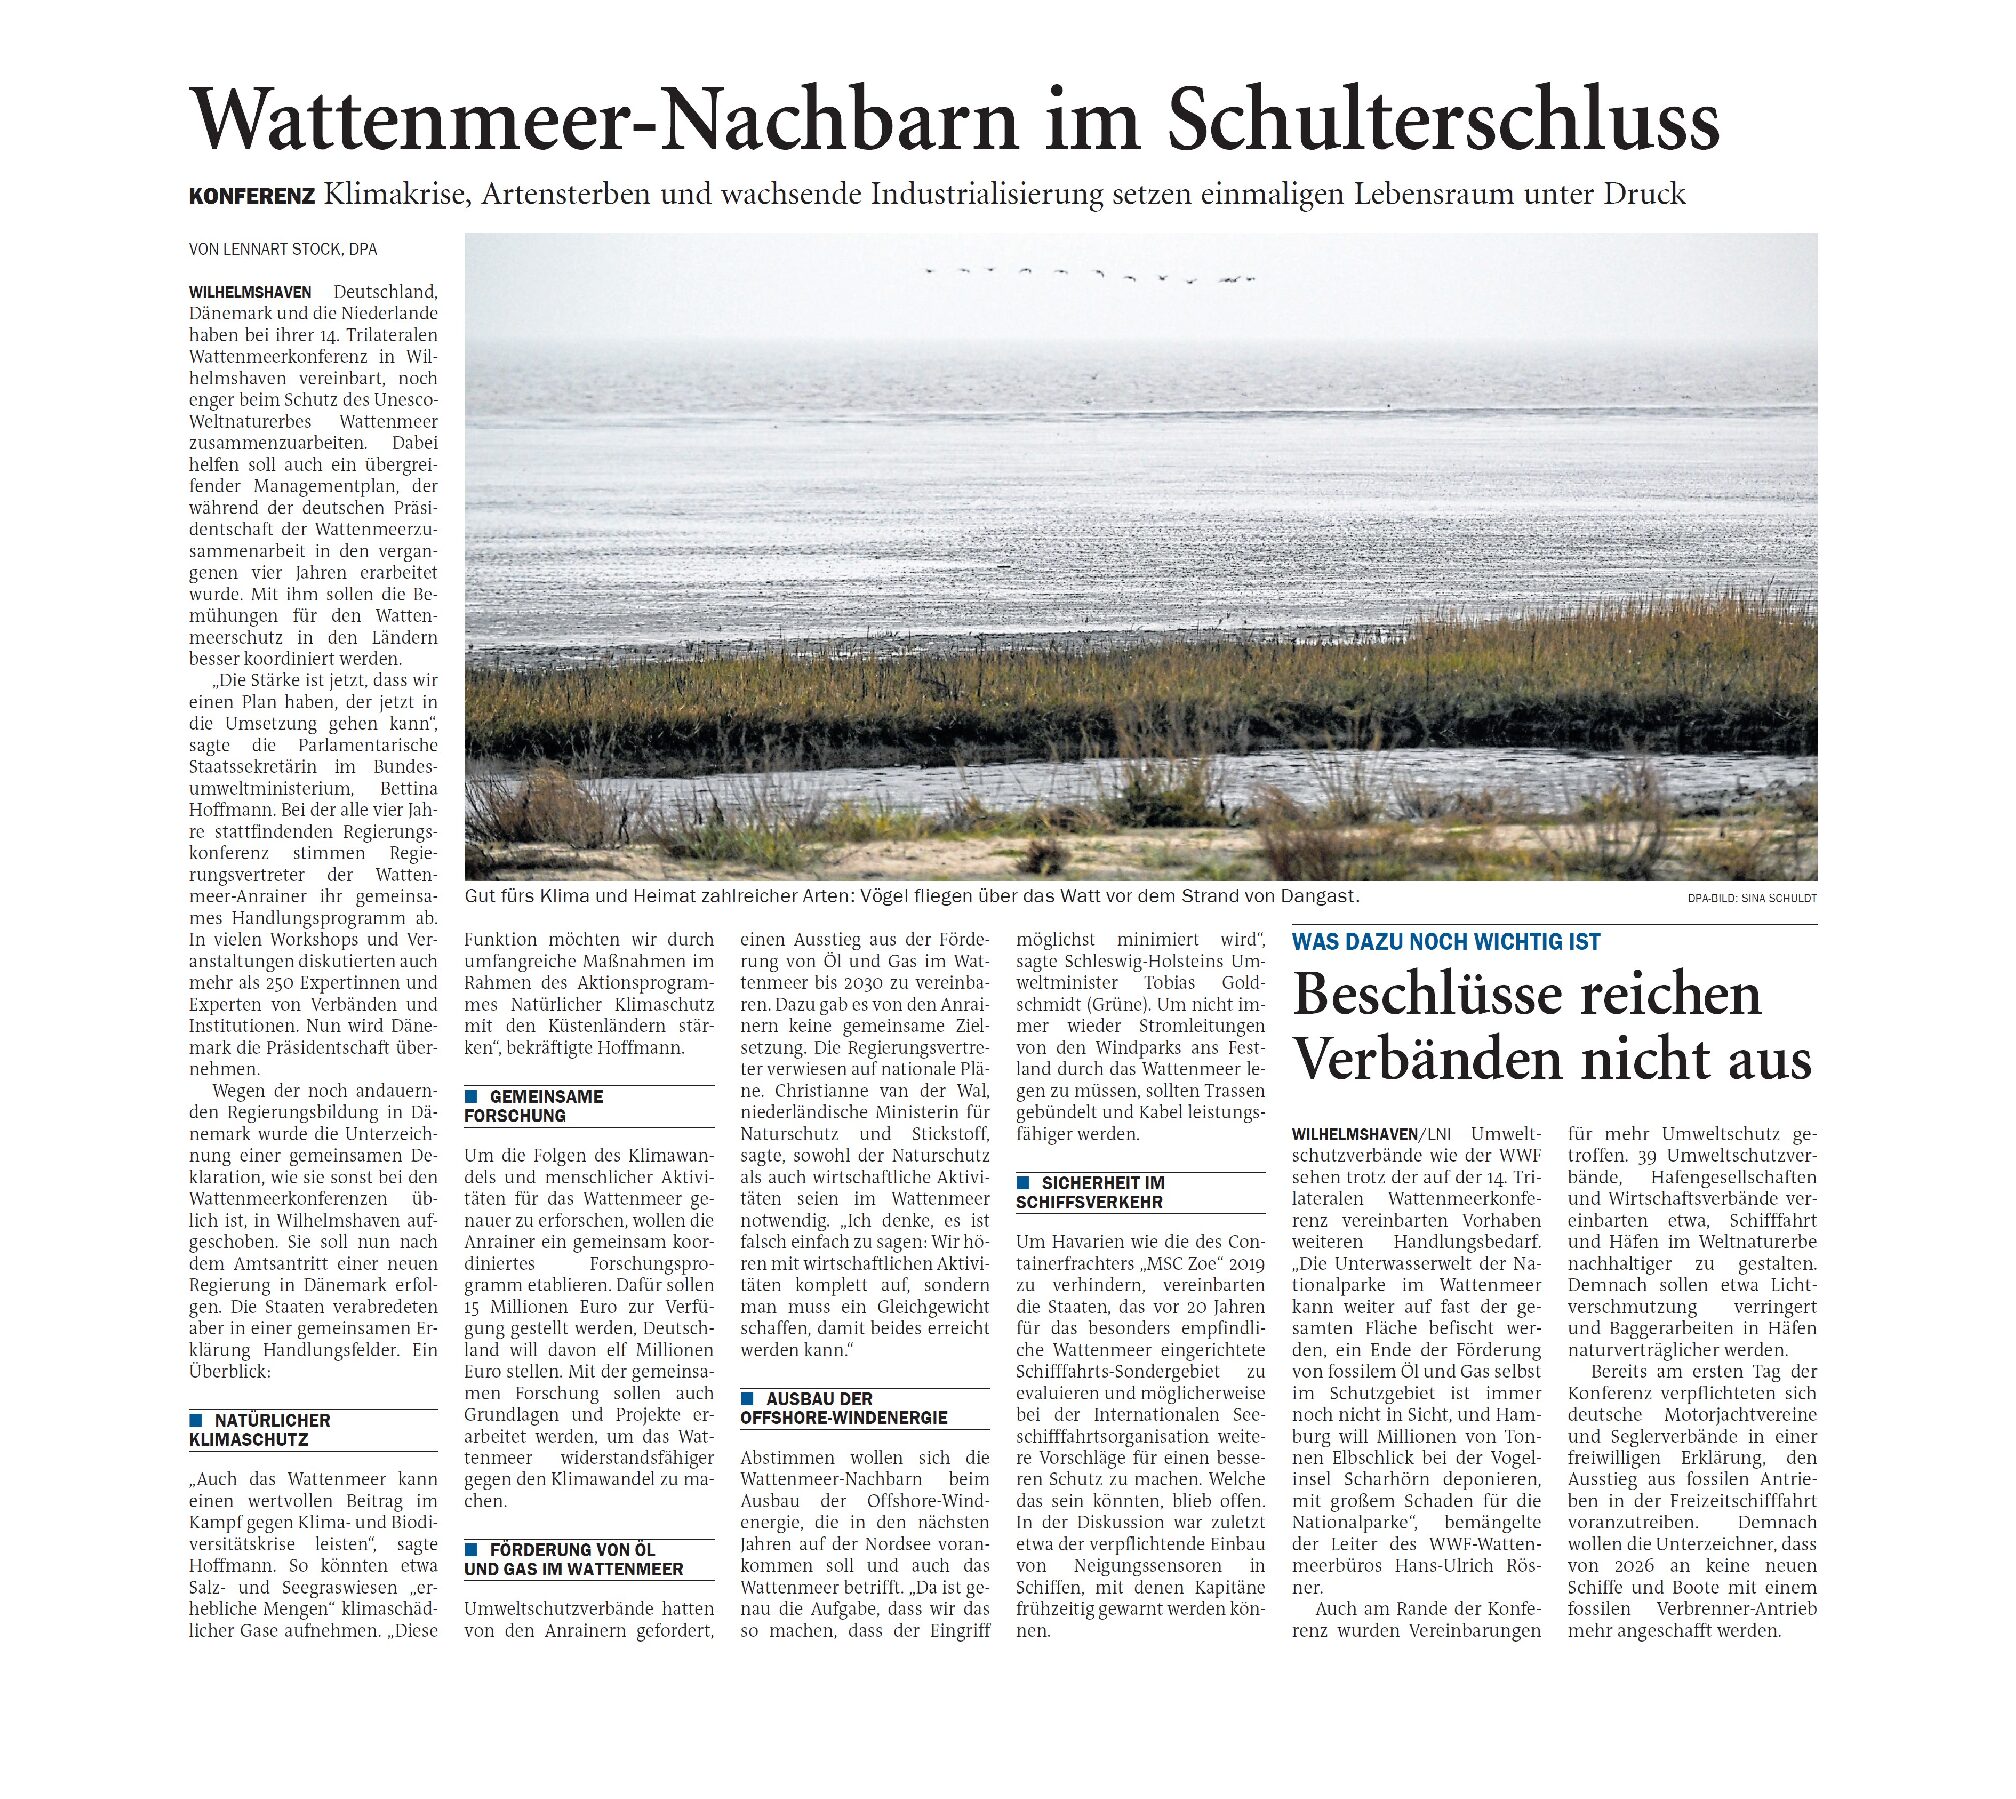 05.12.2022 Jeversches Wochenblatt – Wattenmeer-Nachbarn im Schulterschluss